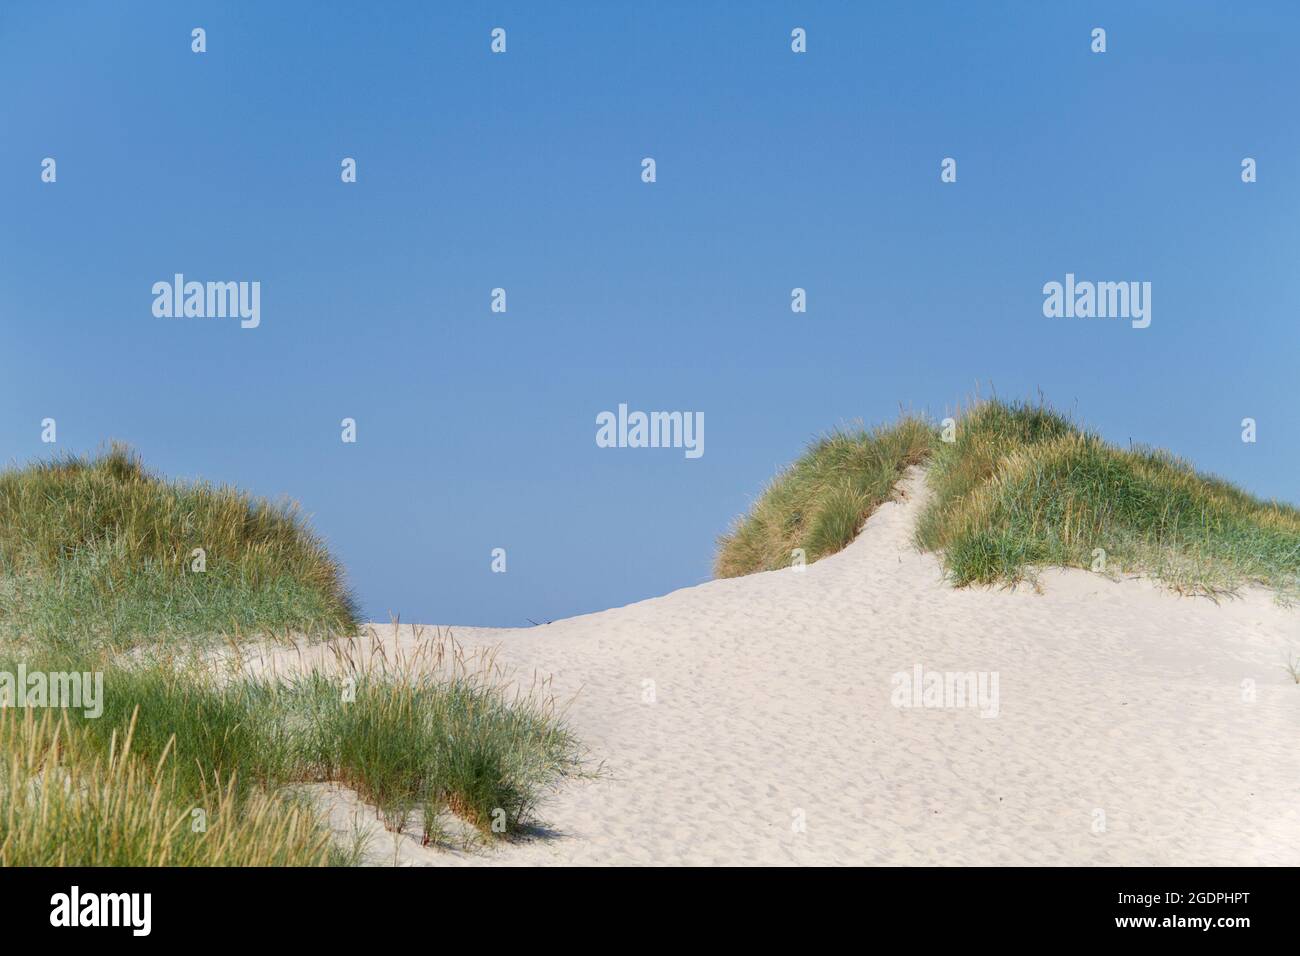 Sanddünen, die mit Marram-Gras vor einem klaren blauen Himmel wachsen Stockfoto